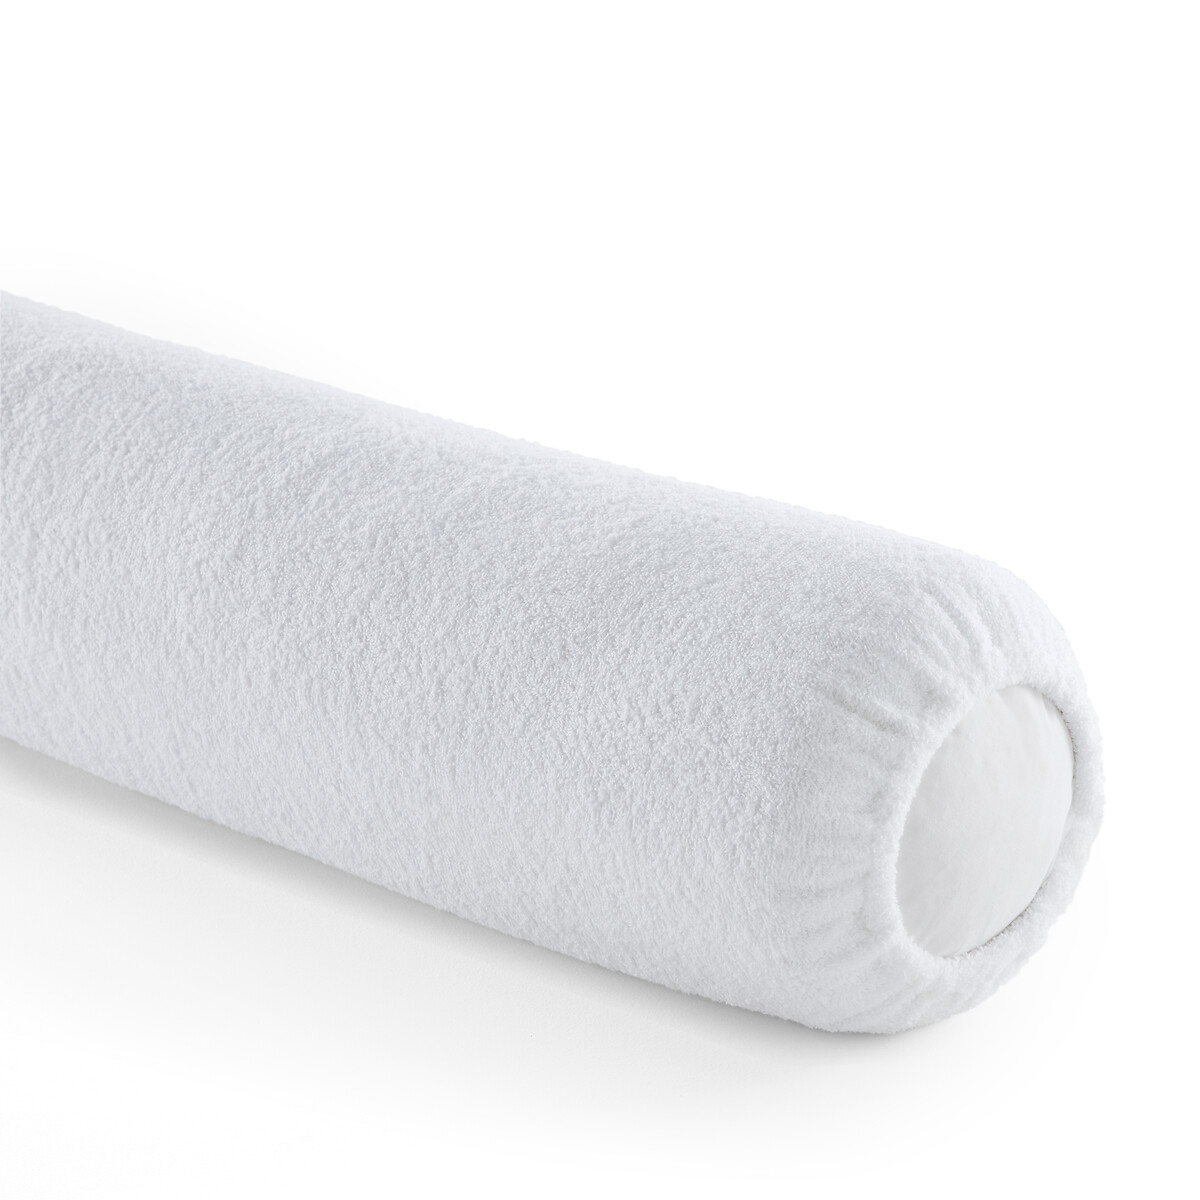 Чехол Защитный на подушку-валик из махровой ткани 100 хлопок длина: 160 см белый